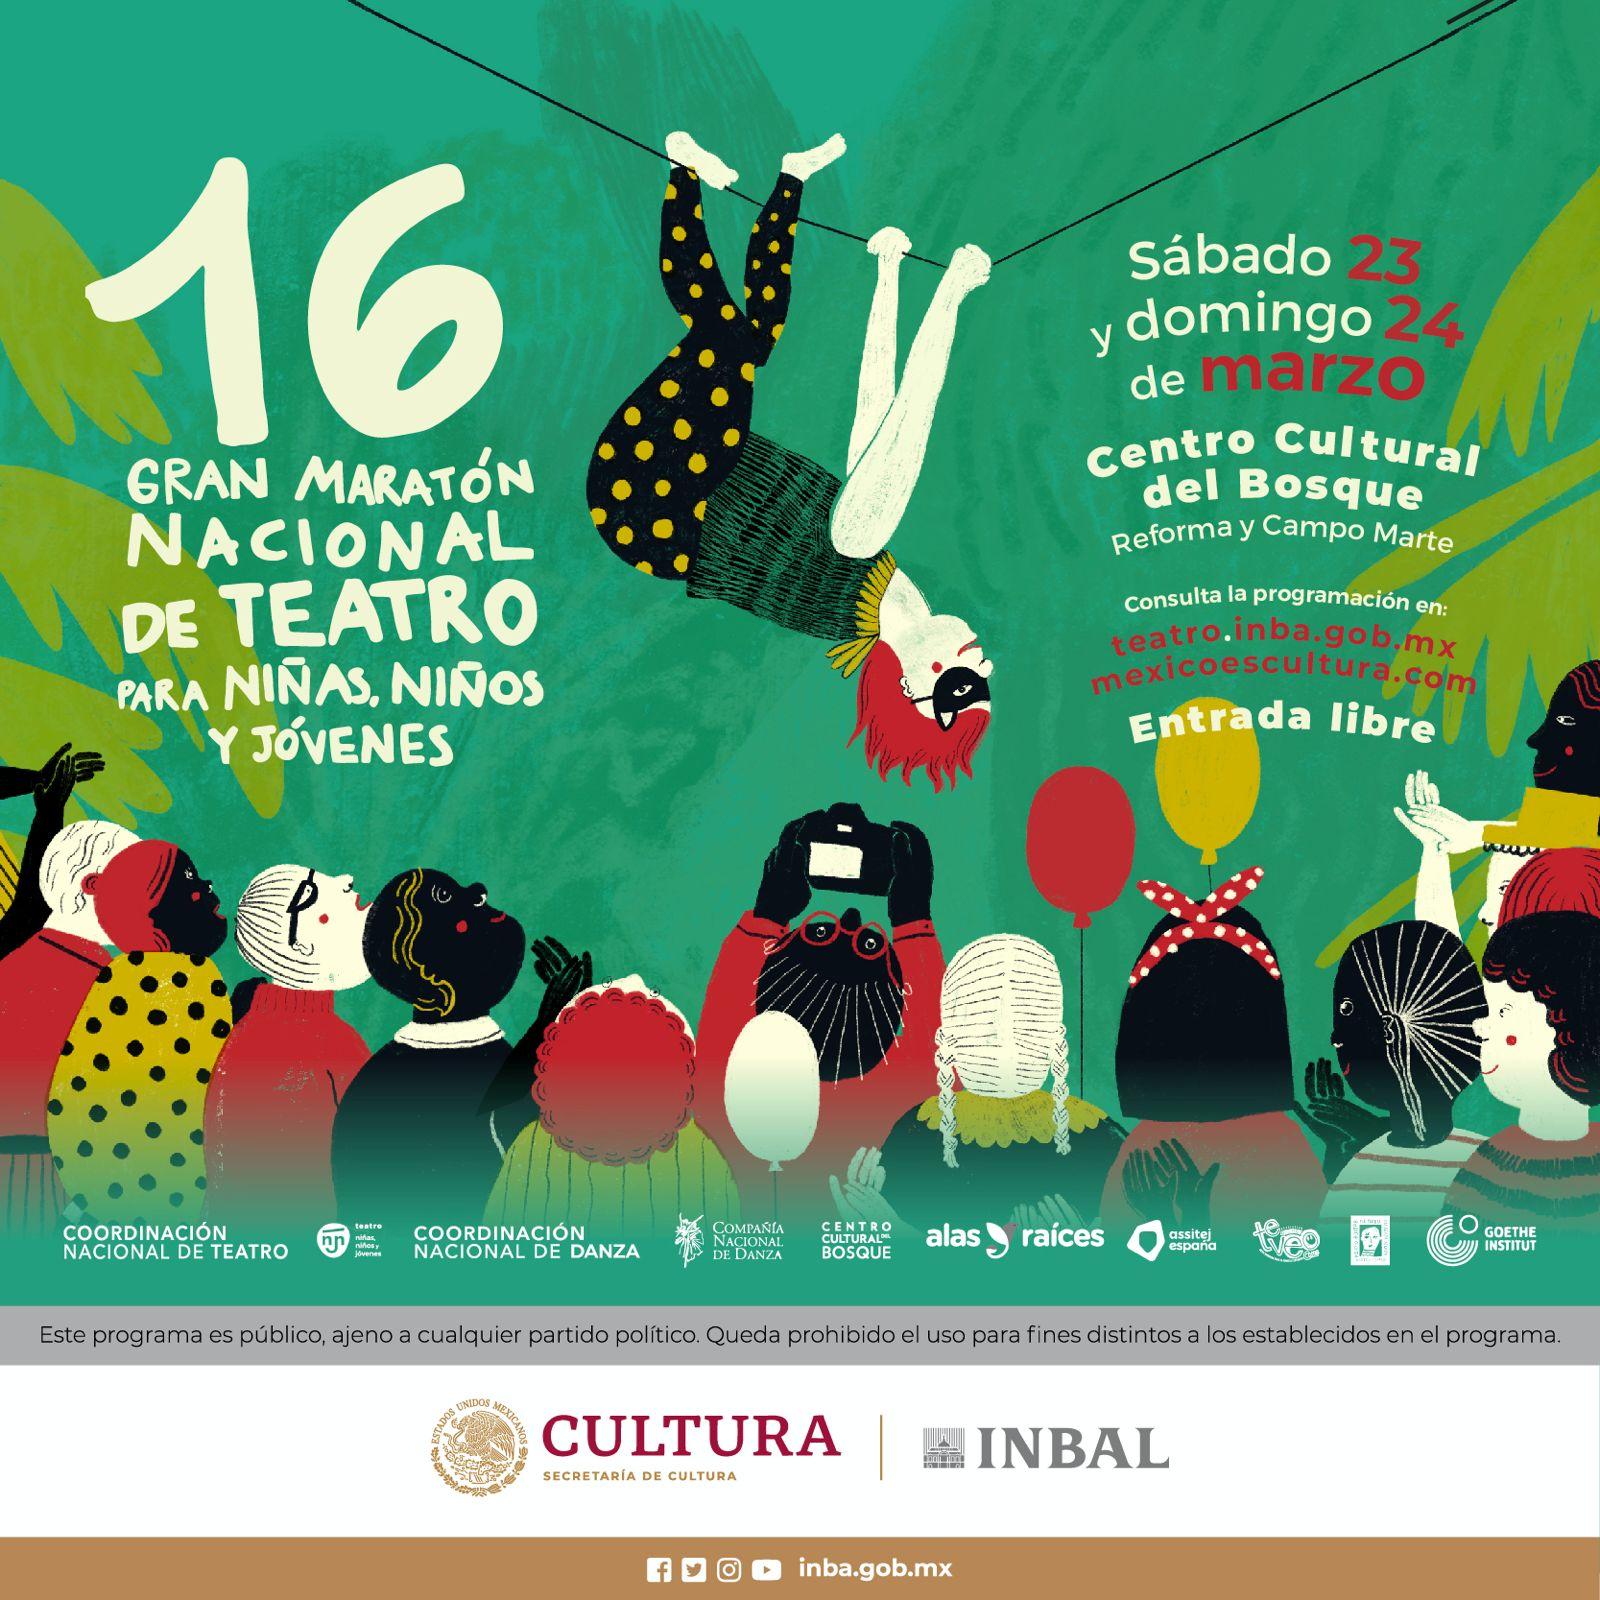 المكسيك تحتفل بالماراثون المسرحي الكبير السادس عشر للمسرح للأطفال واليافعين والشباب